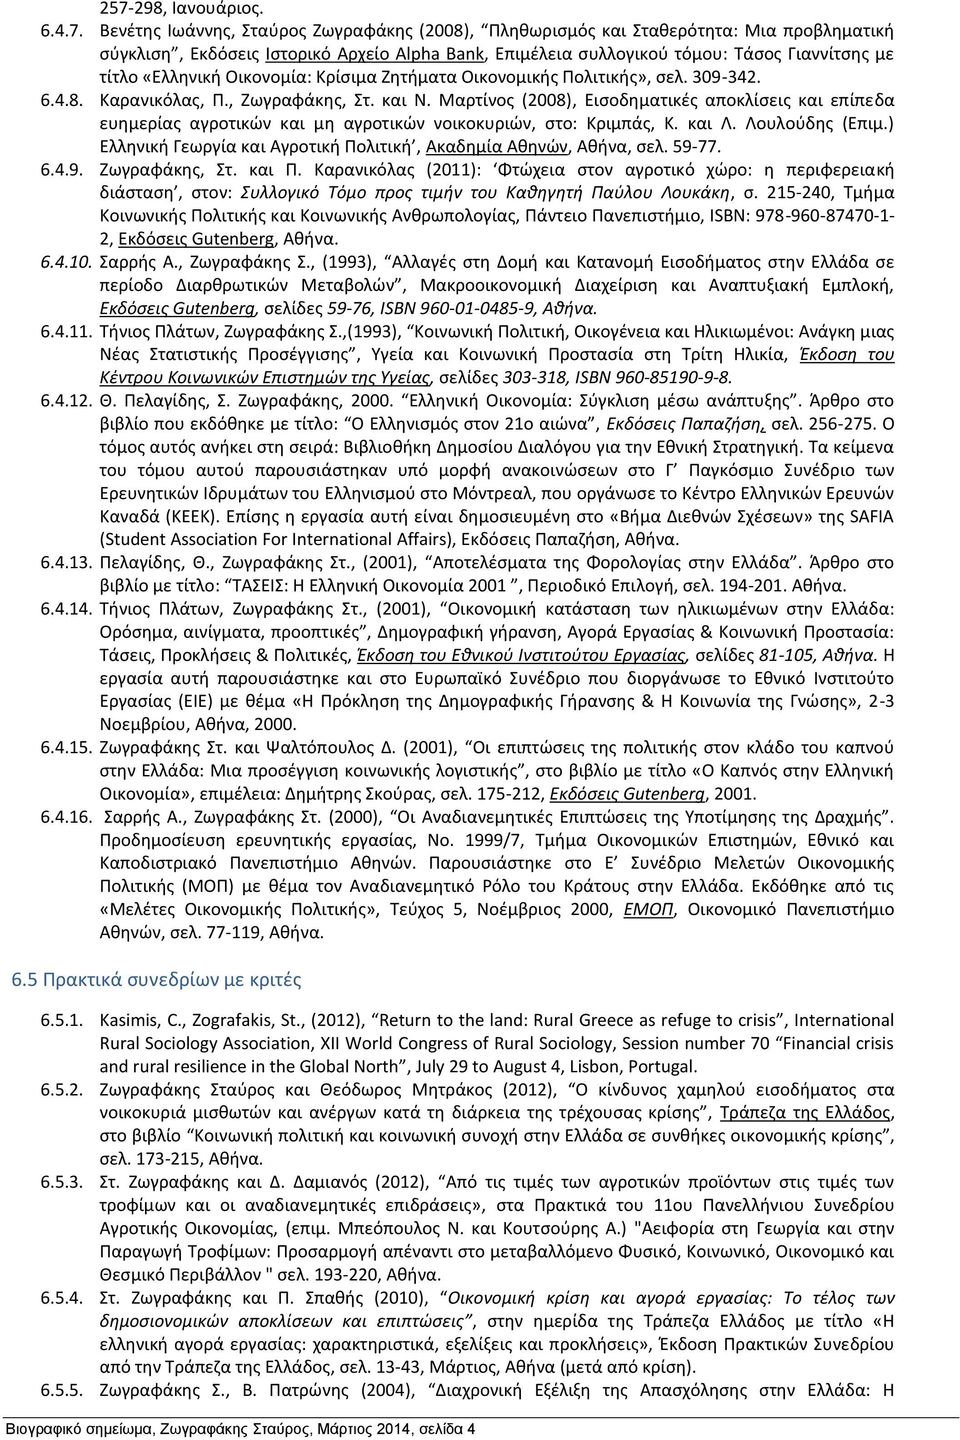 Μαρτίνος (2008), Εισοδηματικές αποκλίσεις και επίπεδα ευημερίας αγροτικών και μη αγροτικών νοικοκυριών, στο: Κριμπάς, Κ. και Λ. Λουλούδης (Επιμ.